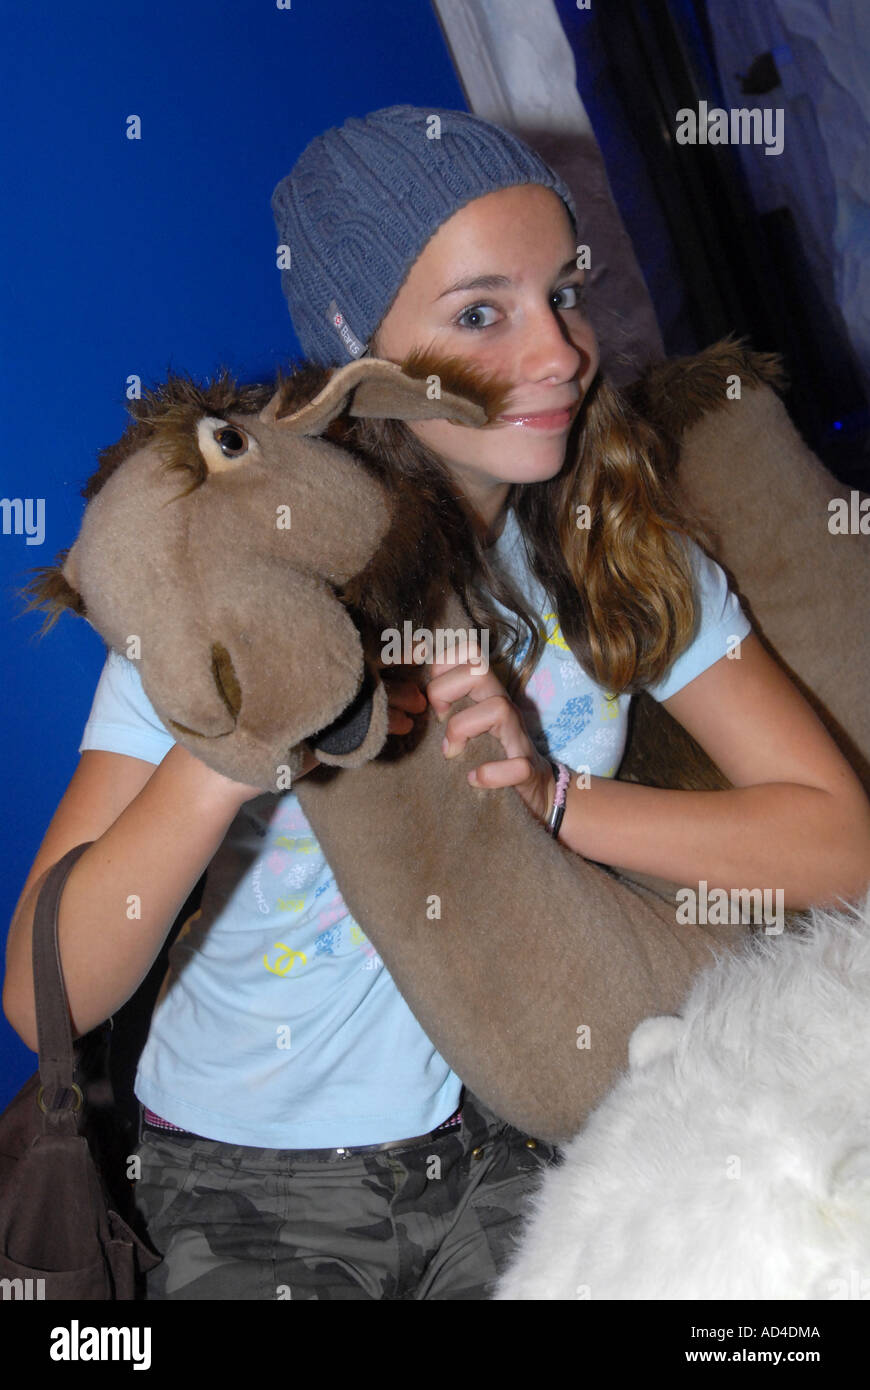 Fille avec un jouet en peluche chameau géant Photo Stock - Alamy